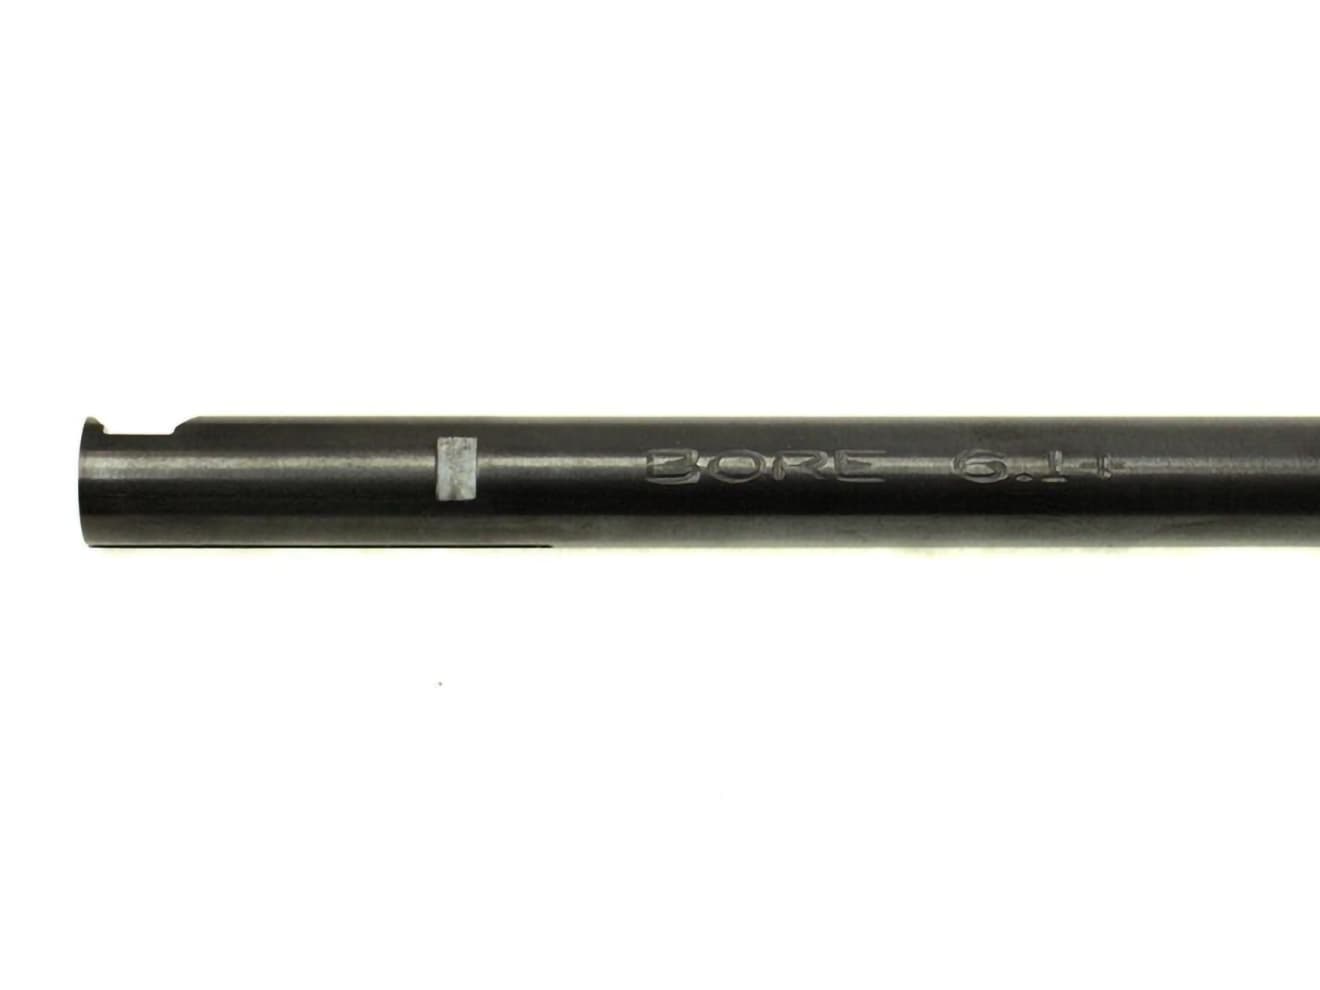 PDI WIDEBOREシリーズ 6.1+ AEG ルーズ インナーバレル(6.1±0.007mm)  [長さ：187mm / 208mm / 229mm / 247mm / 275mm / 303mm / 375mm]